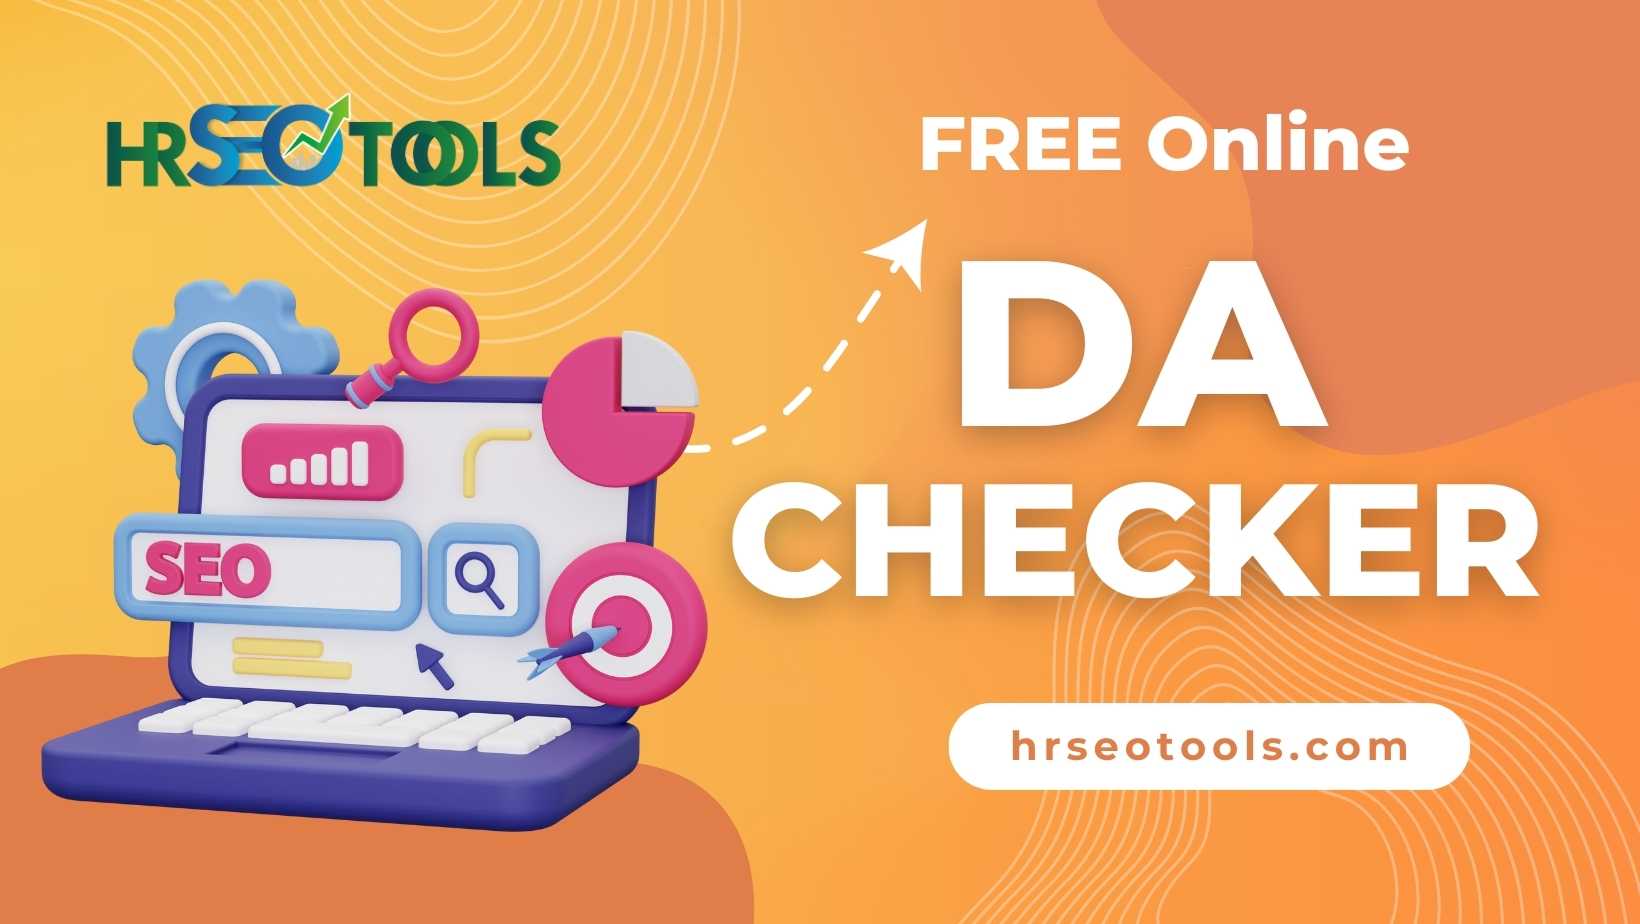 Free Online DA Checker Tool | hrseotools.com